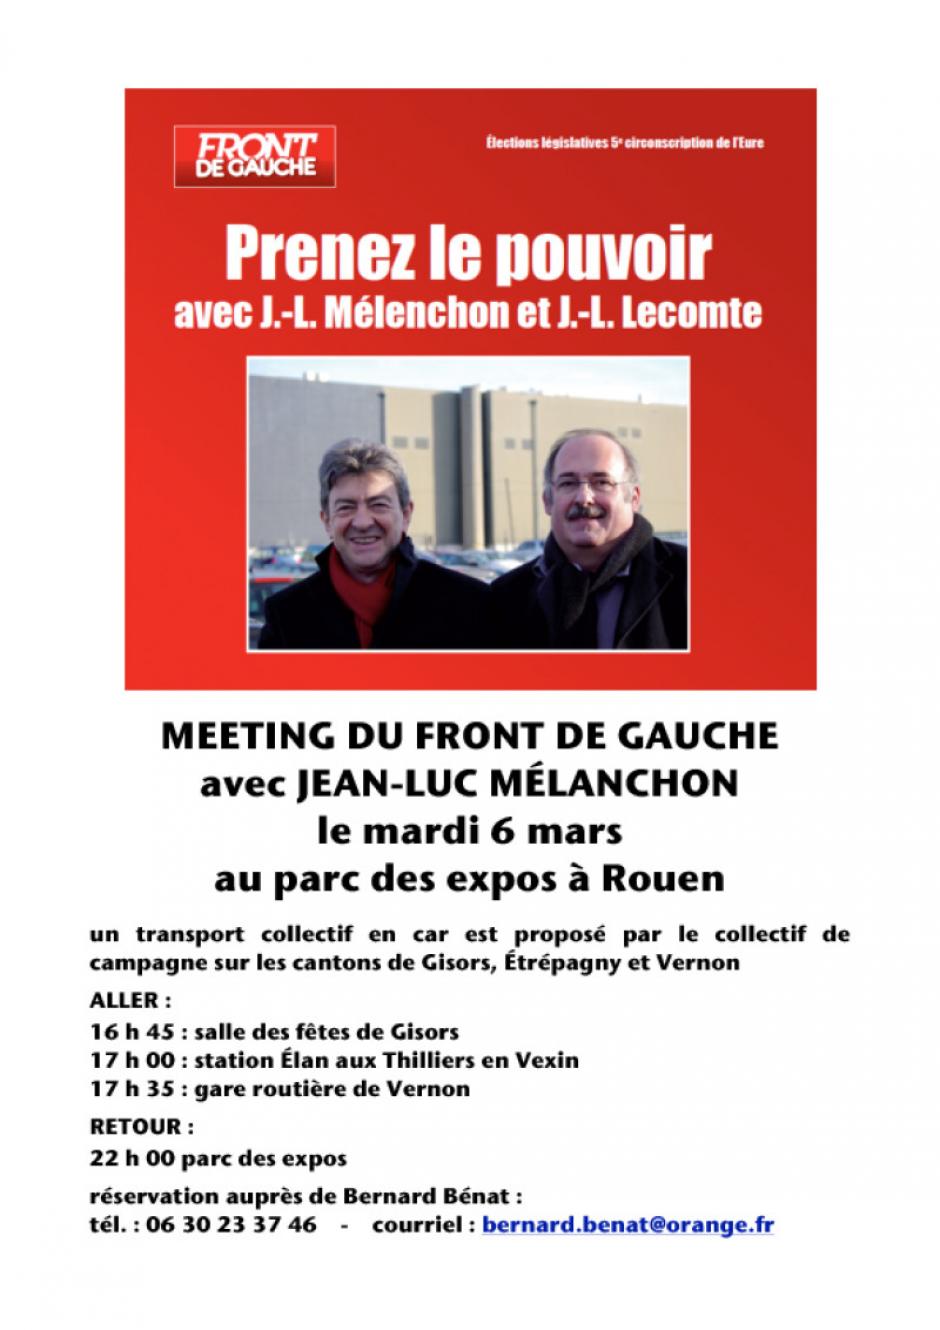 6 mars, Rouen - Meeting de Jean-Luc Mélenchon - Trajet en car